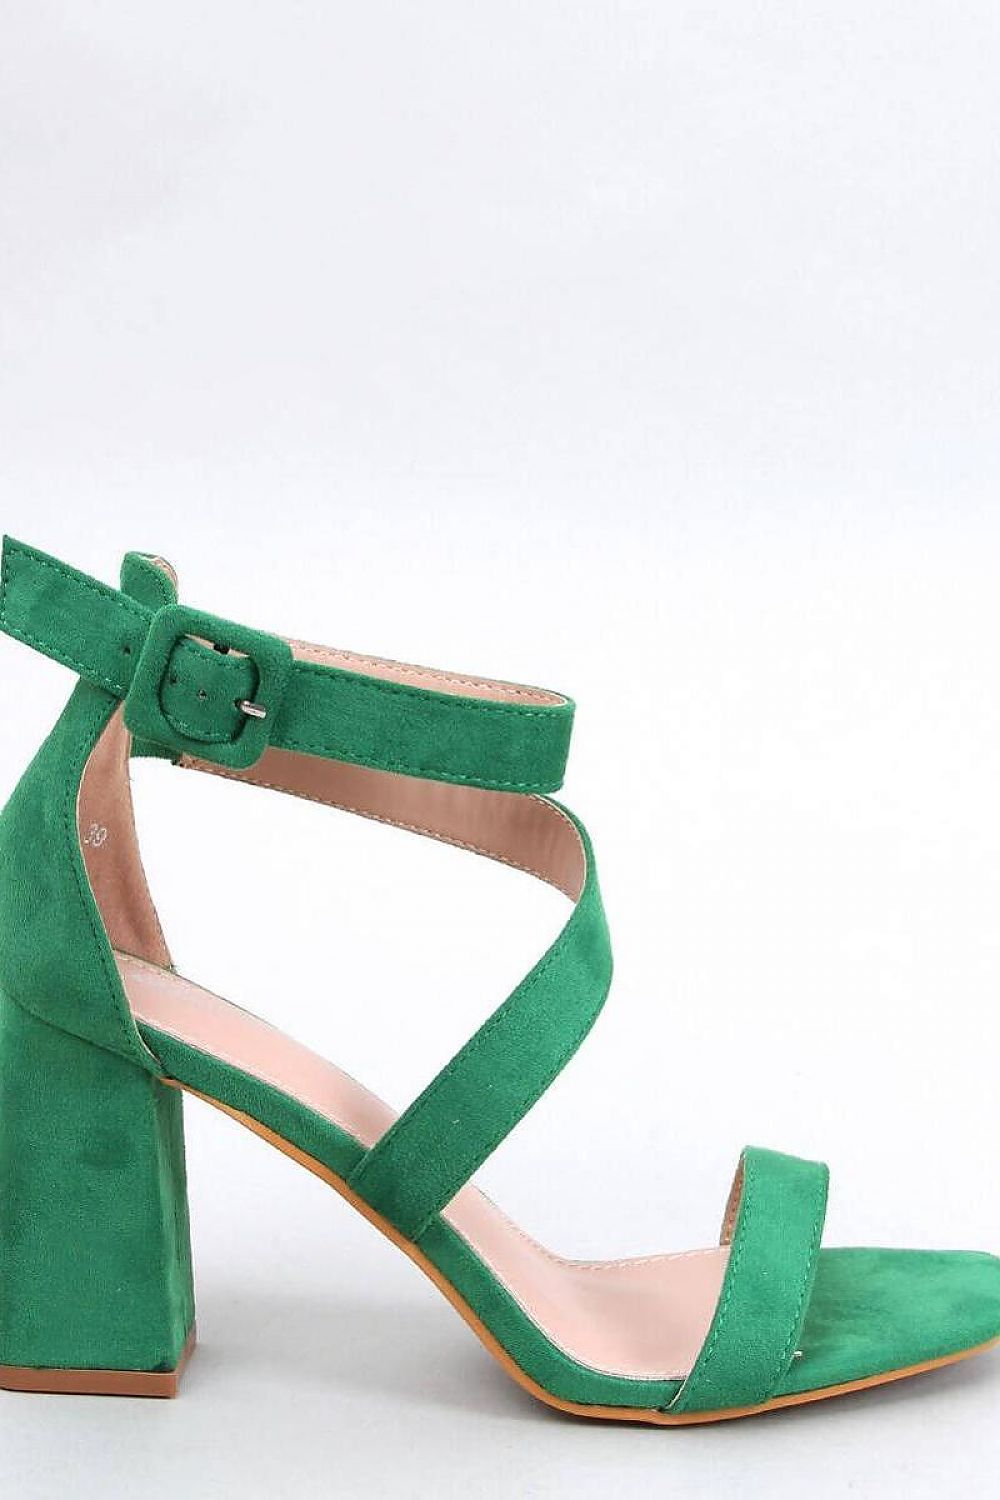 TEEK - Green Boa Heel Sandals SHOES TEEK MH 6.5  